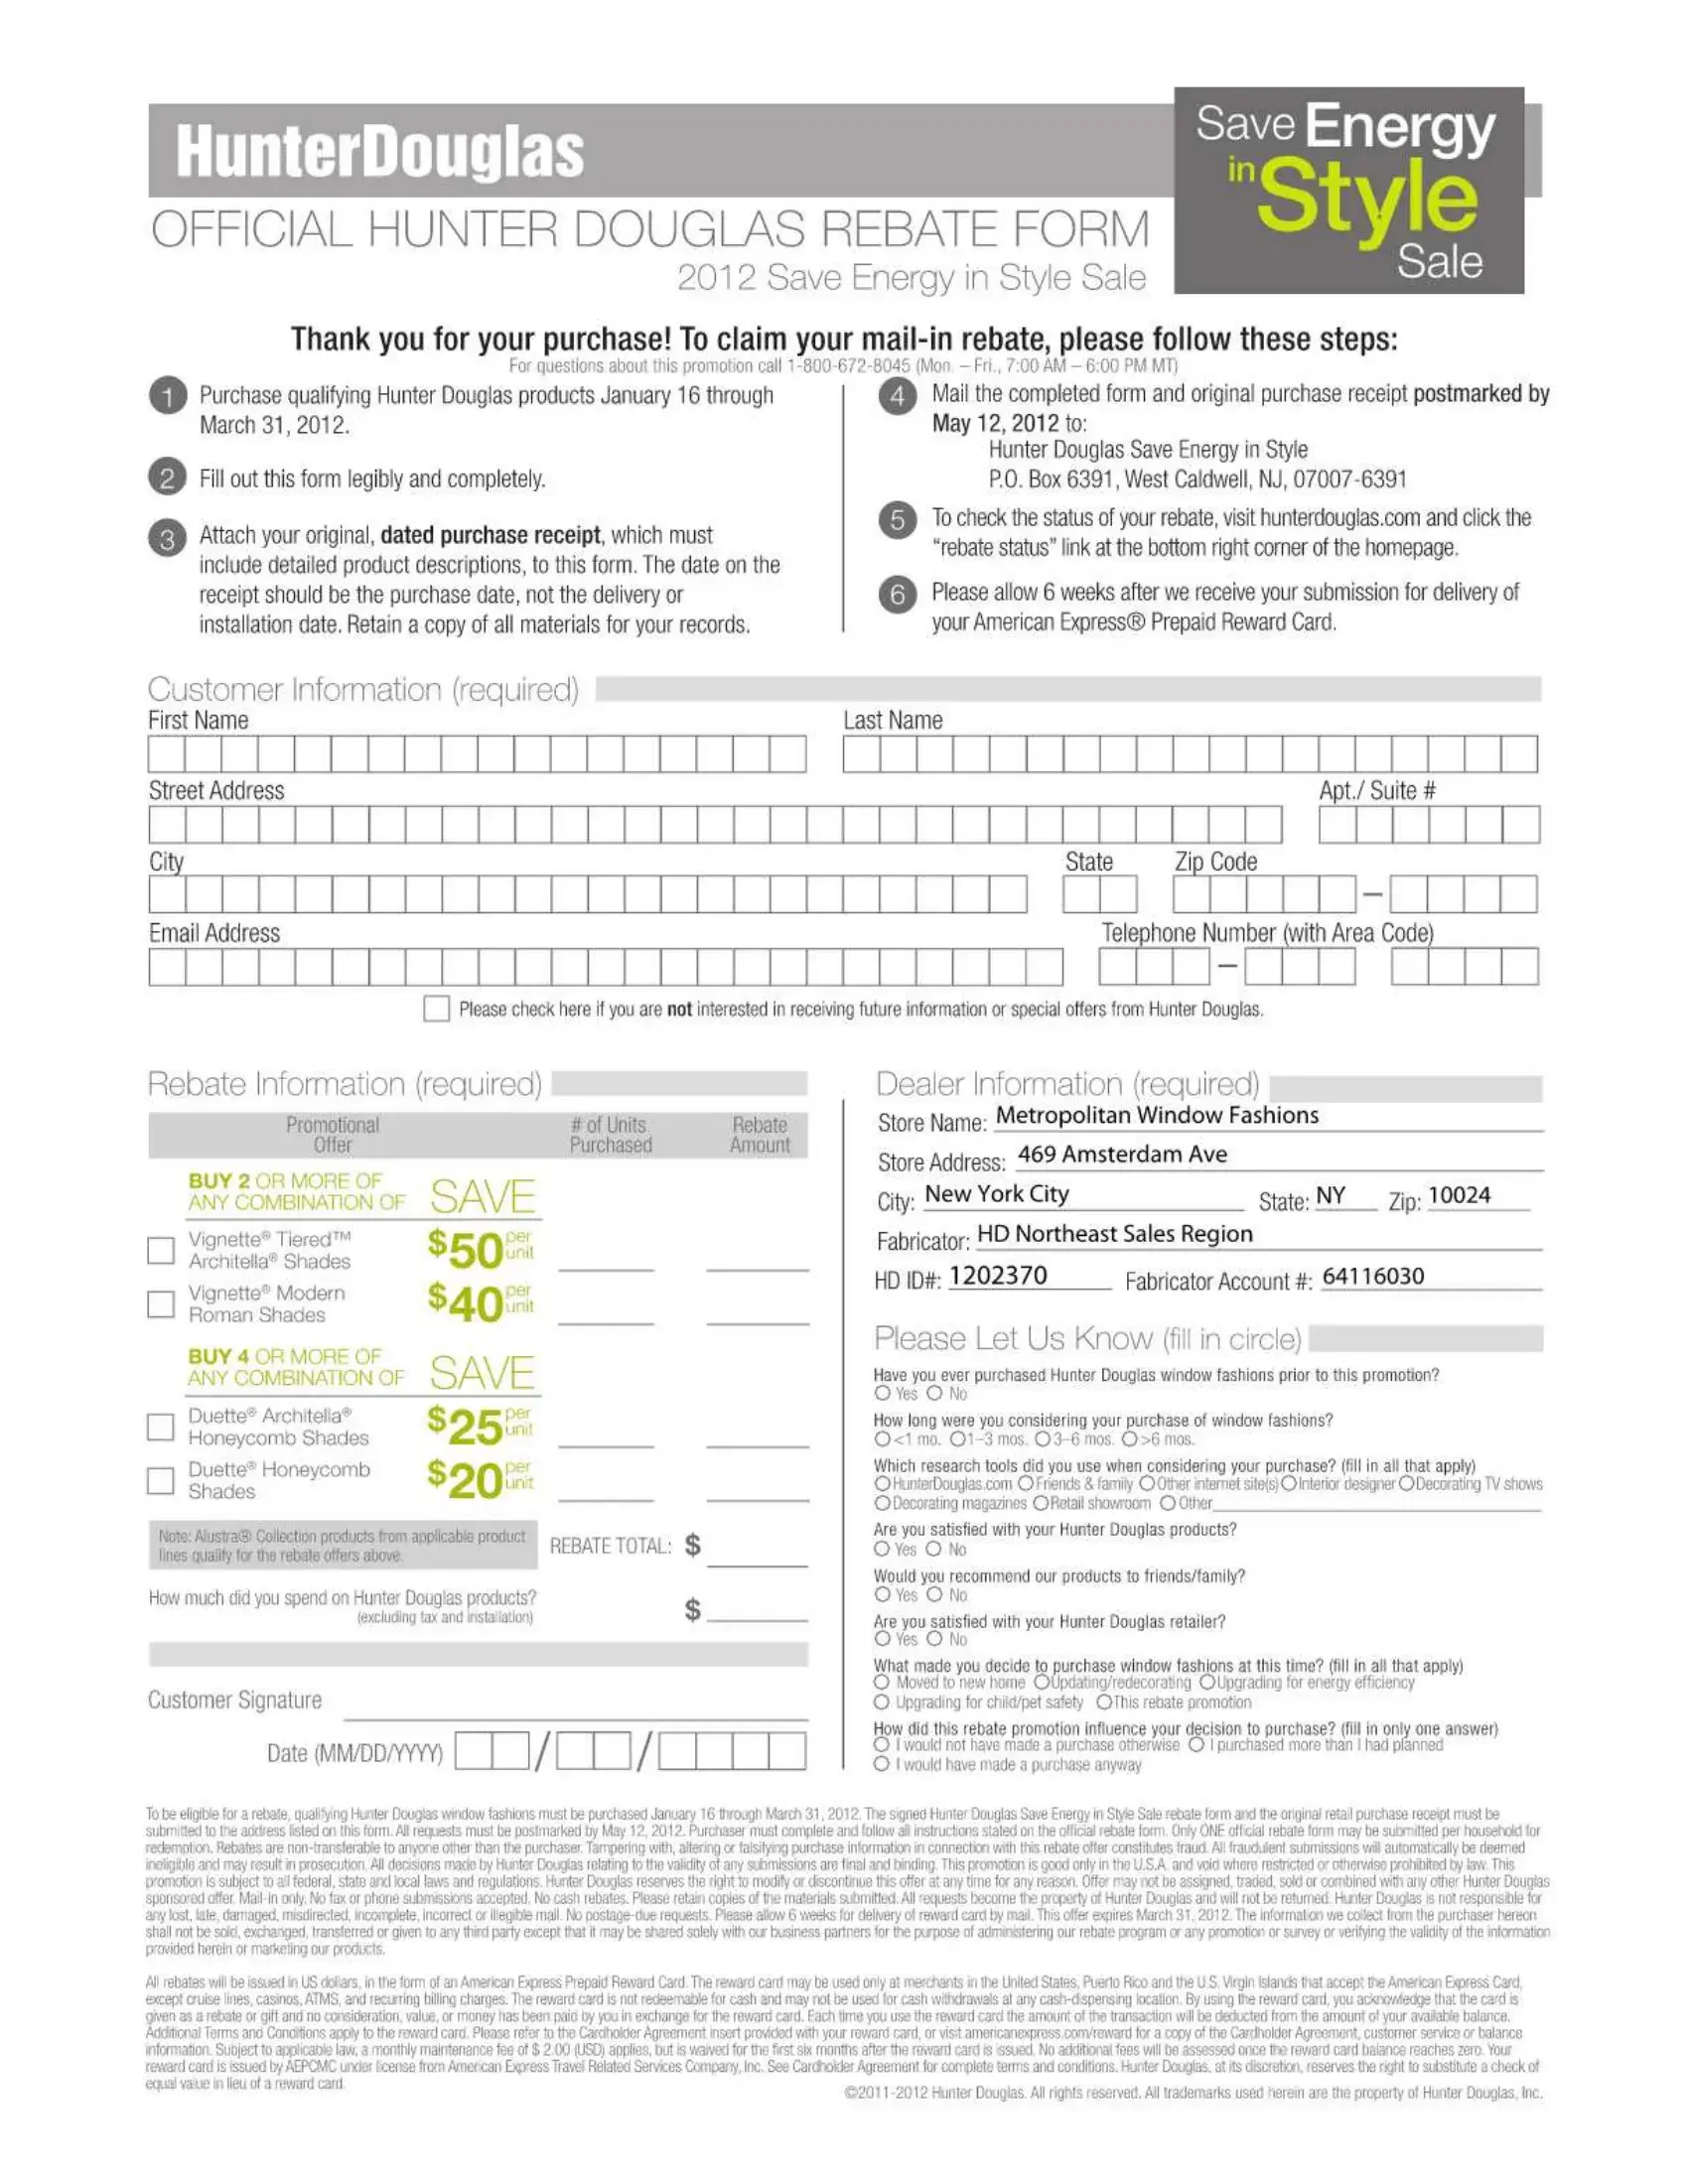 Hunter Douglas Official Rebate PDF Form FormsPal